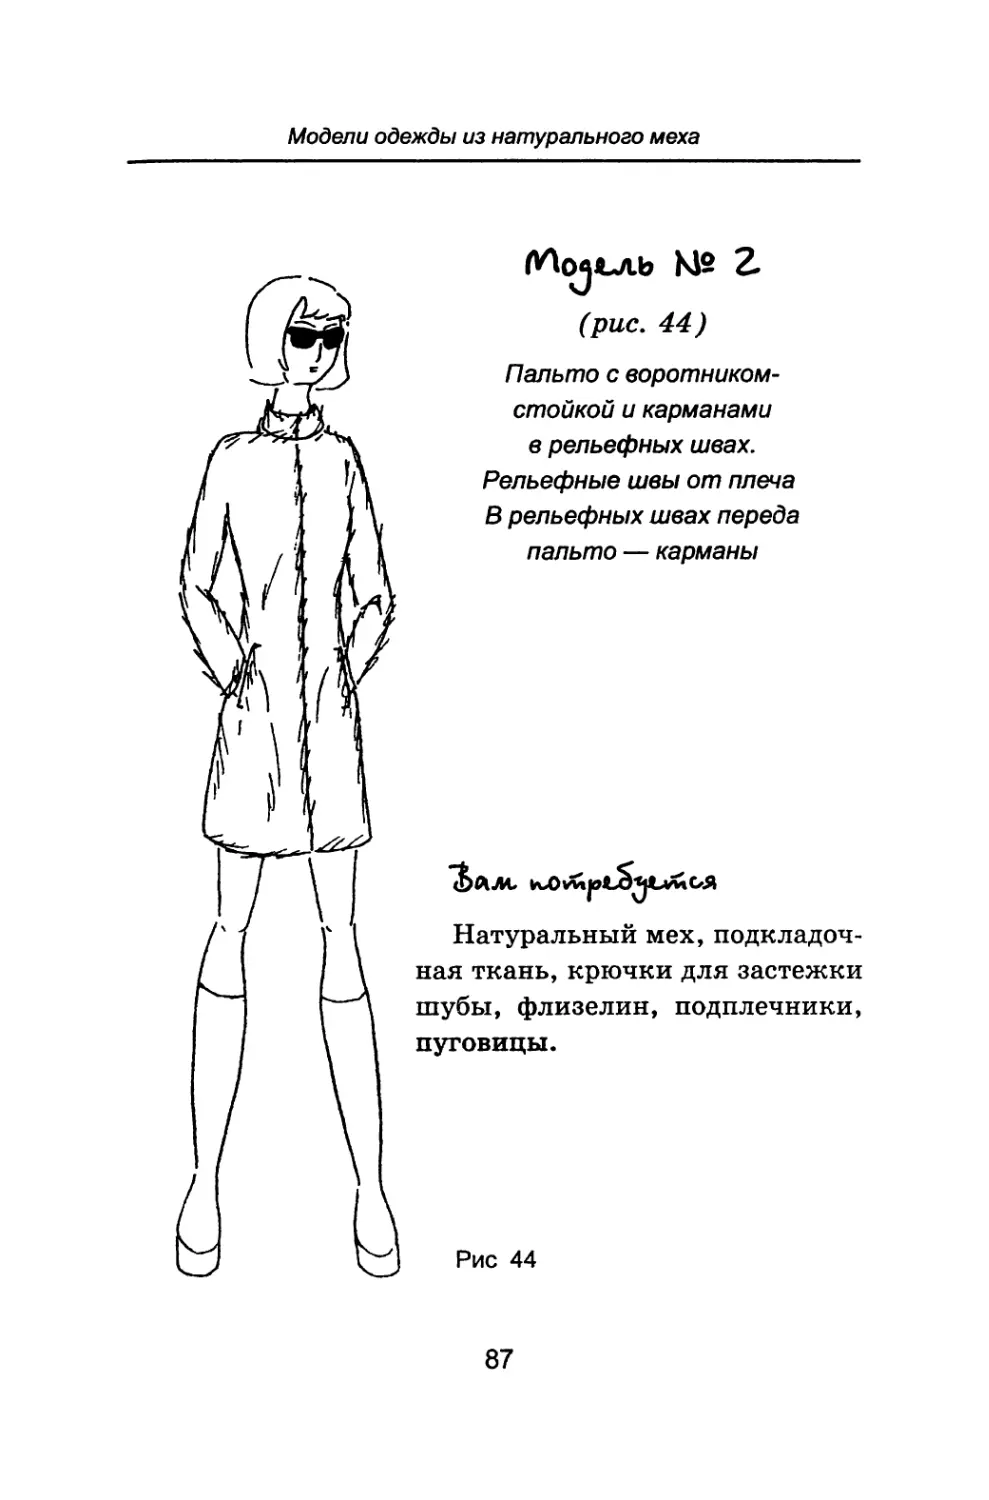 Модель № 2 Пальто с воротником-стойкой и карманами в рельефных швах. Рельефные швы от плеча. В рельефцых швах переда пальто — карманы